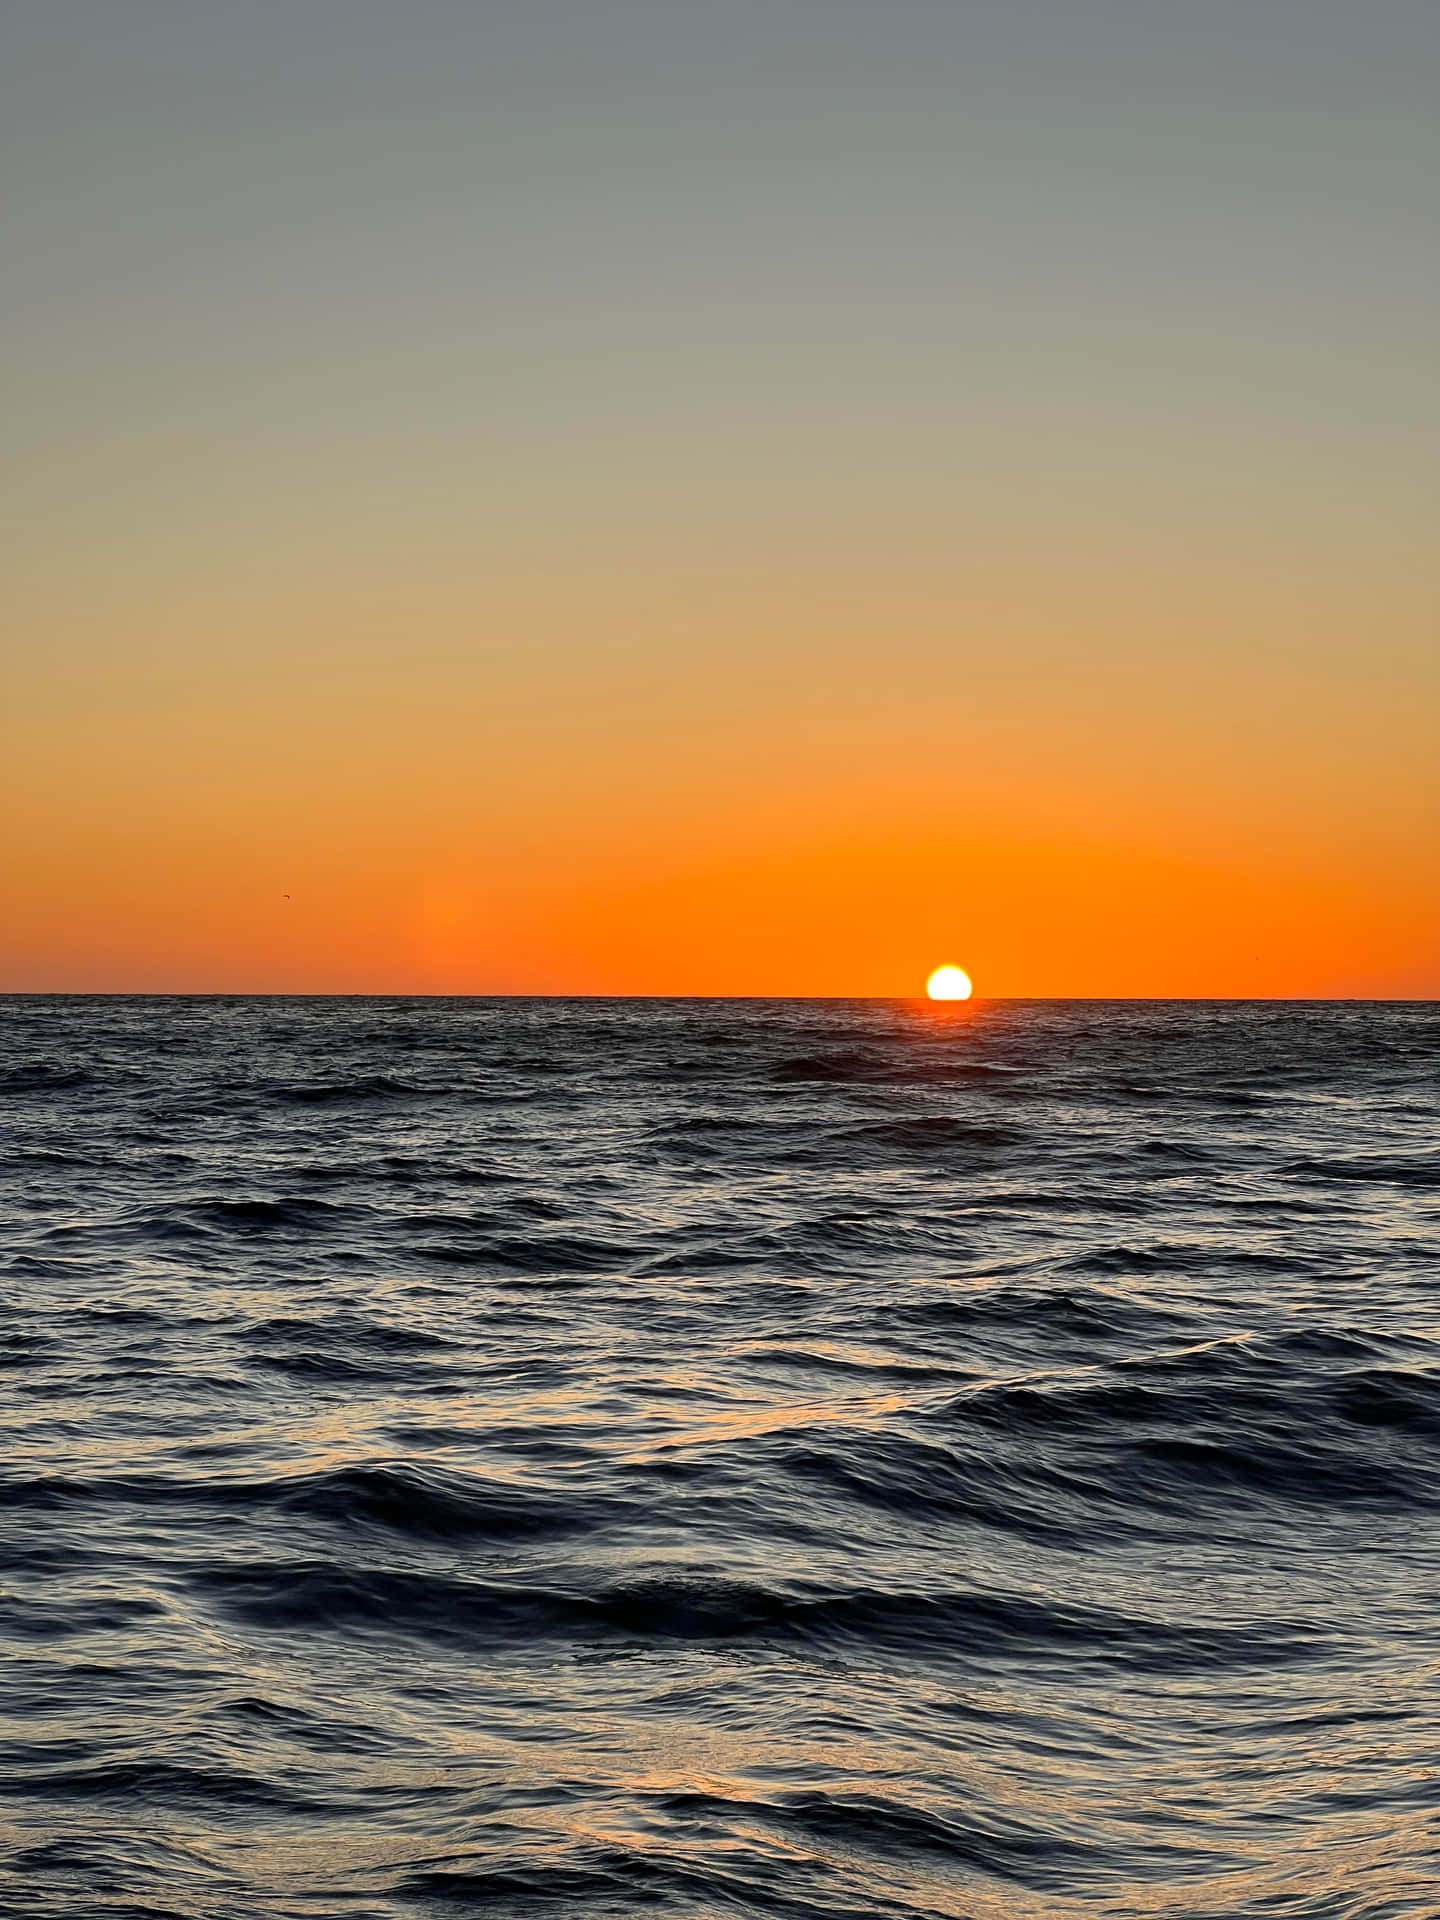 Mesmerizing Sunset Over The Serene Ocean